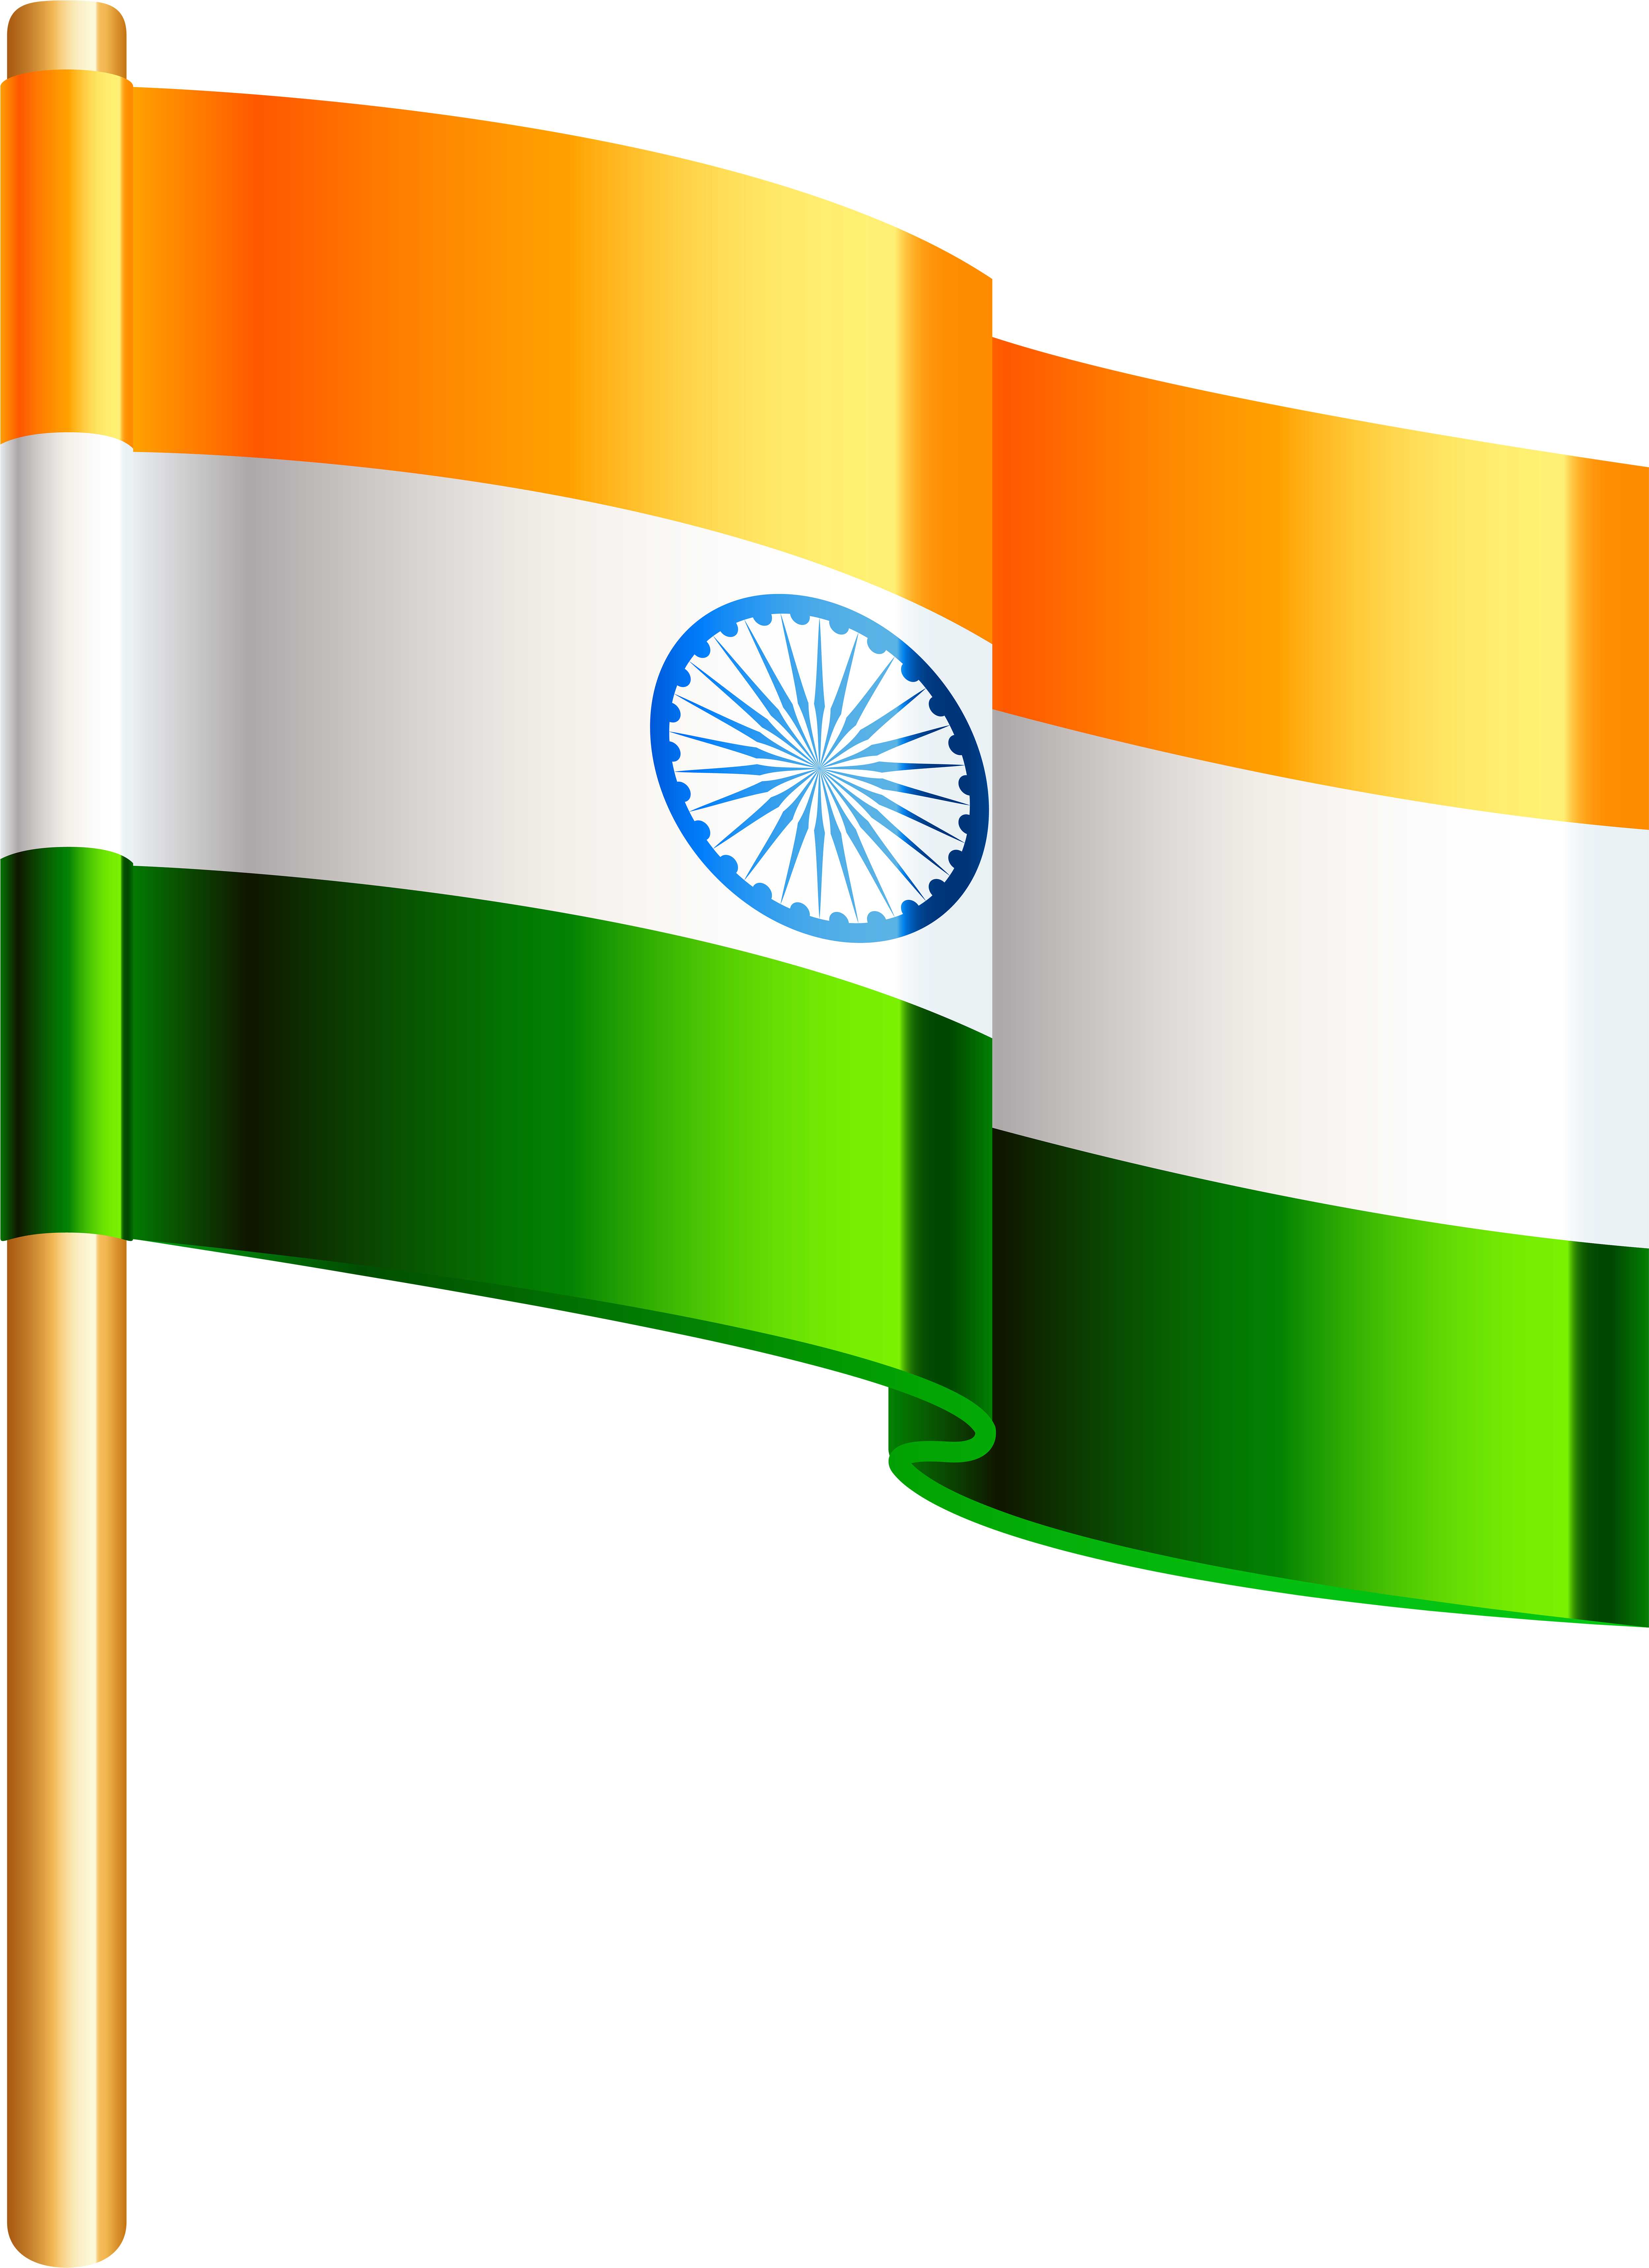 India Flag Svg, India Flag Png, Indian Flag Svg, Indian Flag Png, India Flag  Image, Indian Flag Image, India Flag, Indian Flag, India - Etsy